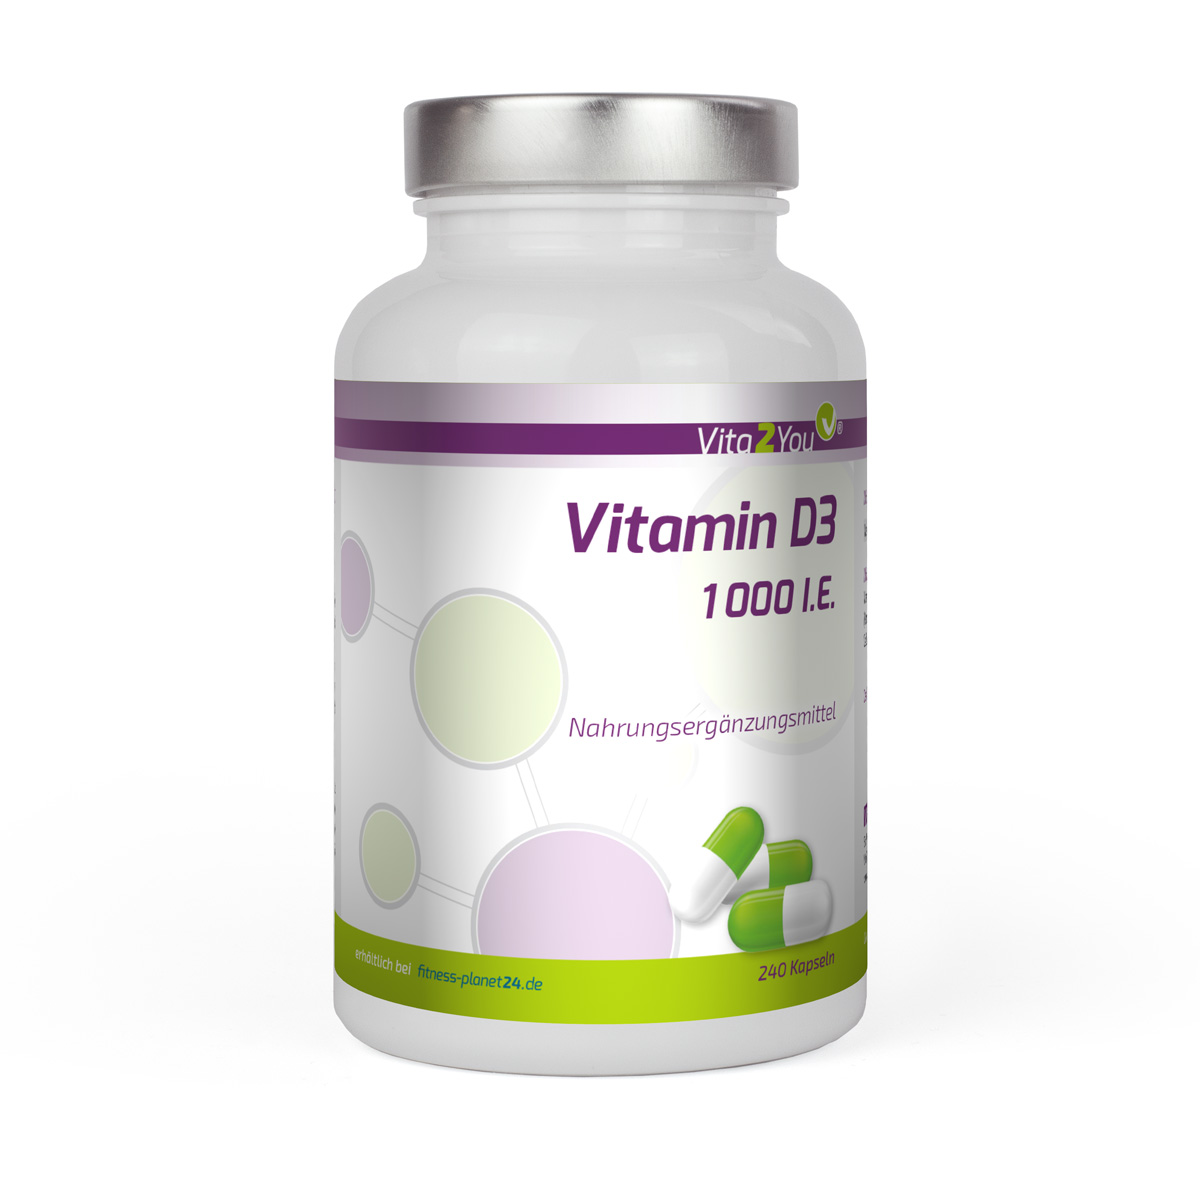 Vitamin D3 1000 IE